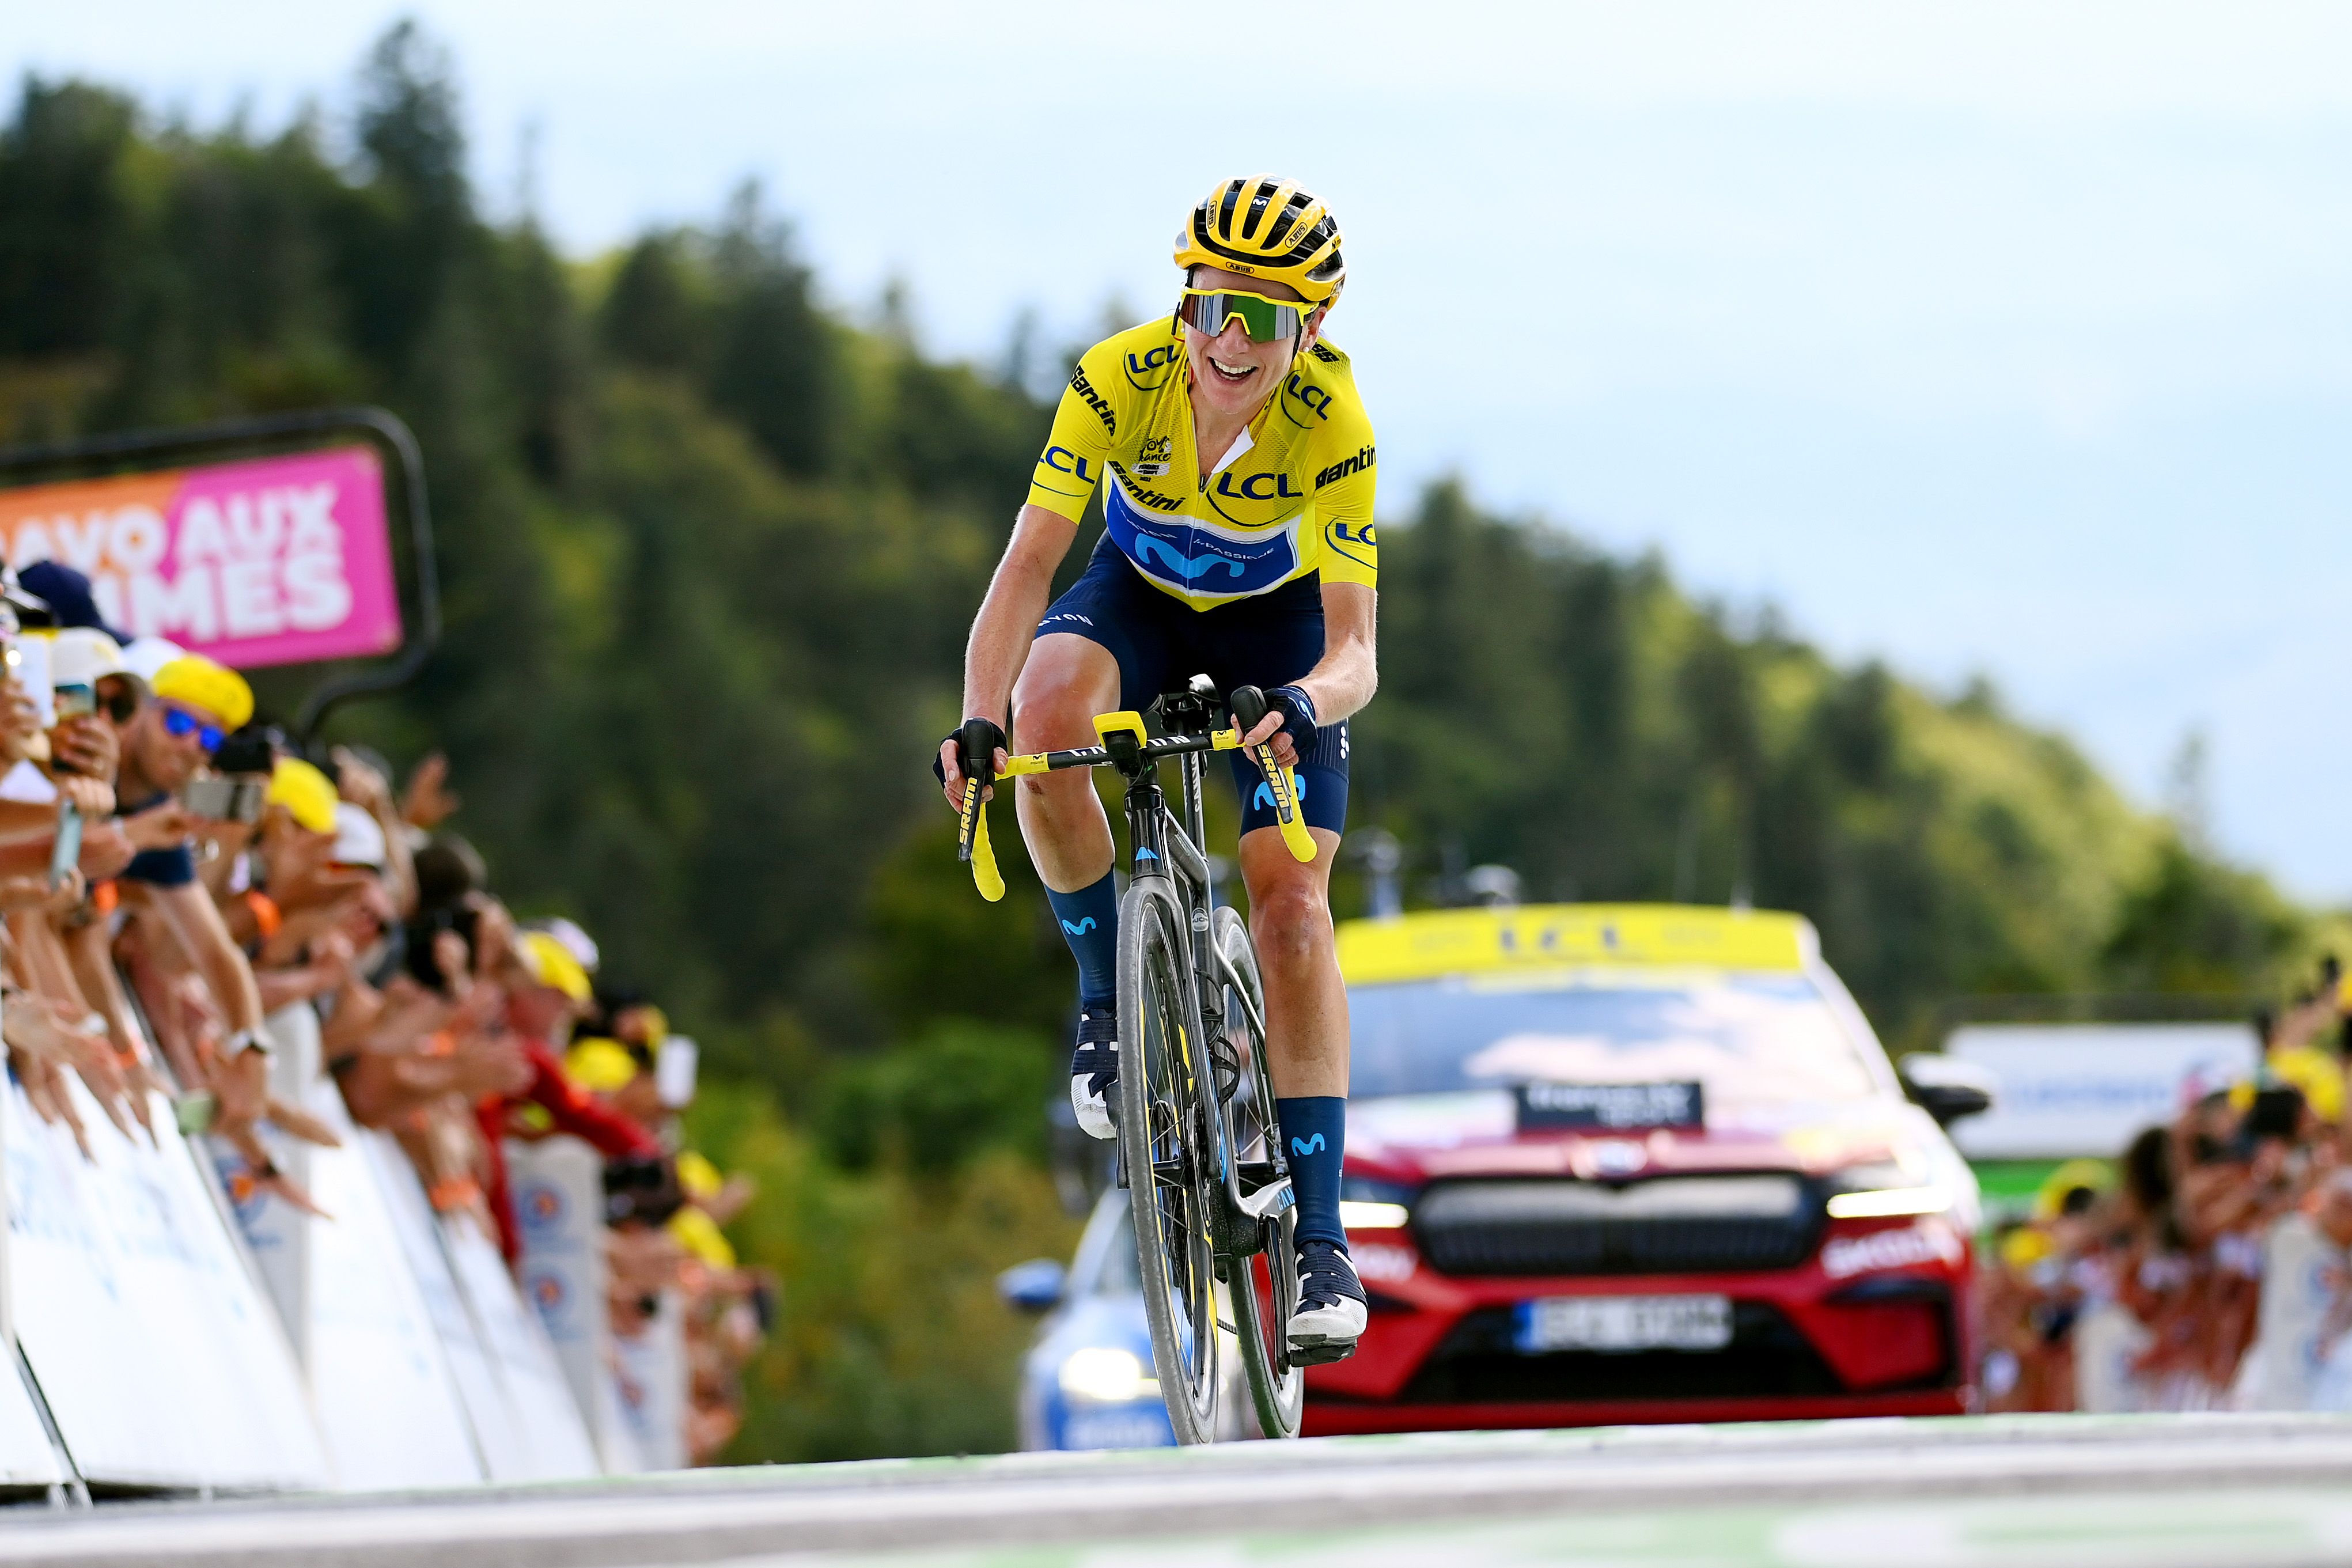 Tour de France Femmes Results 2022 - by Stage Recaps